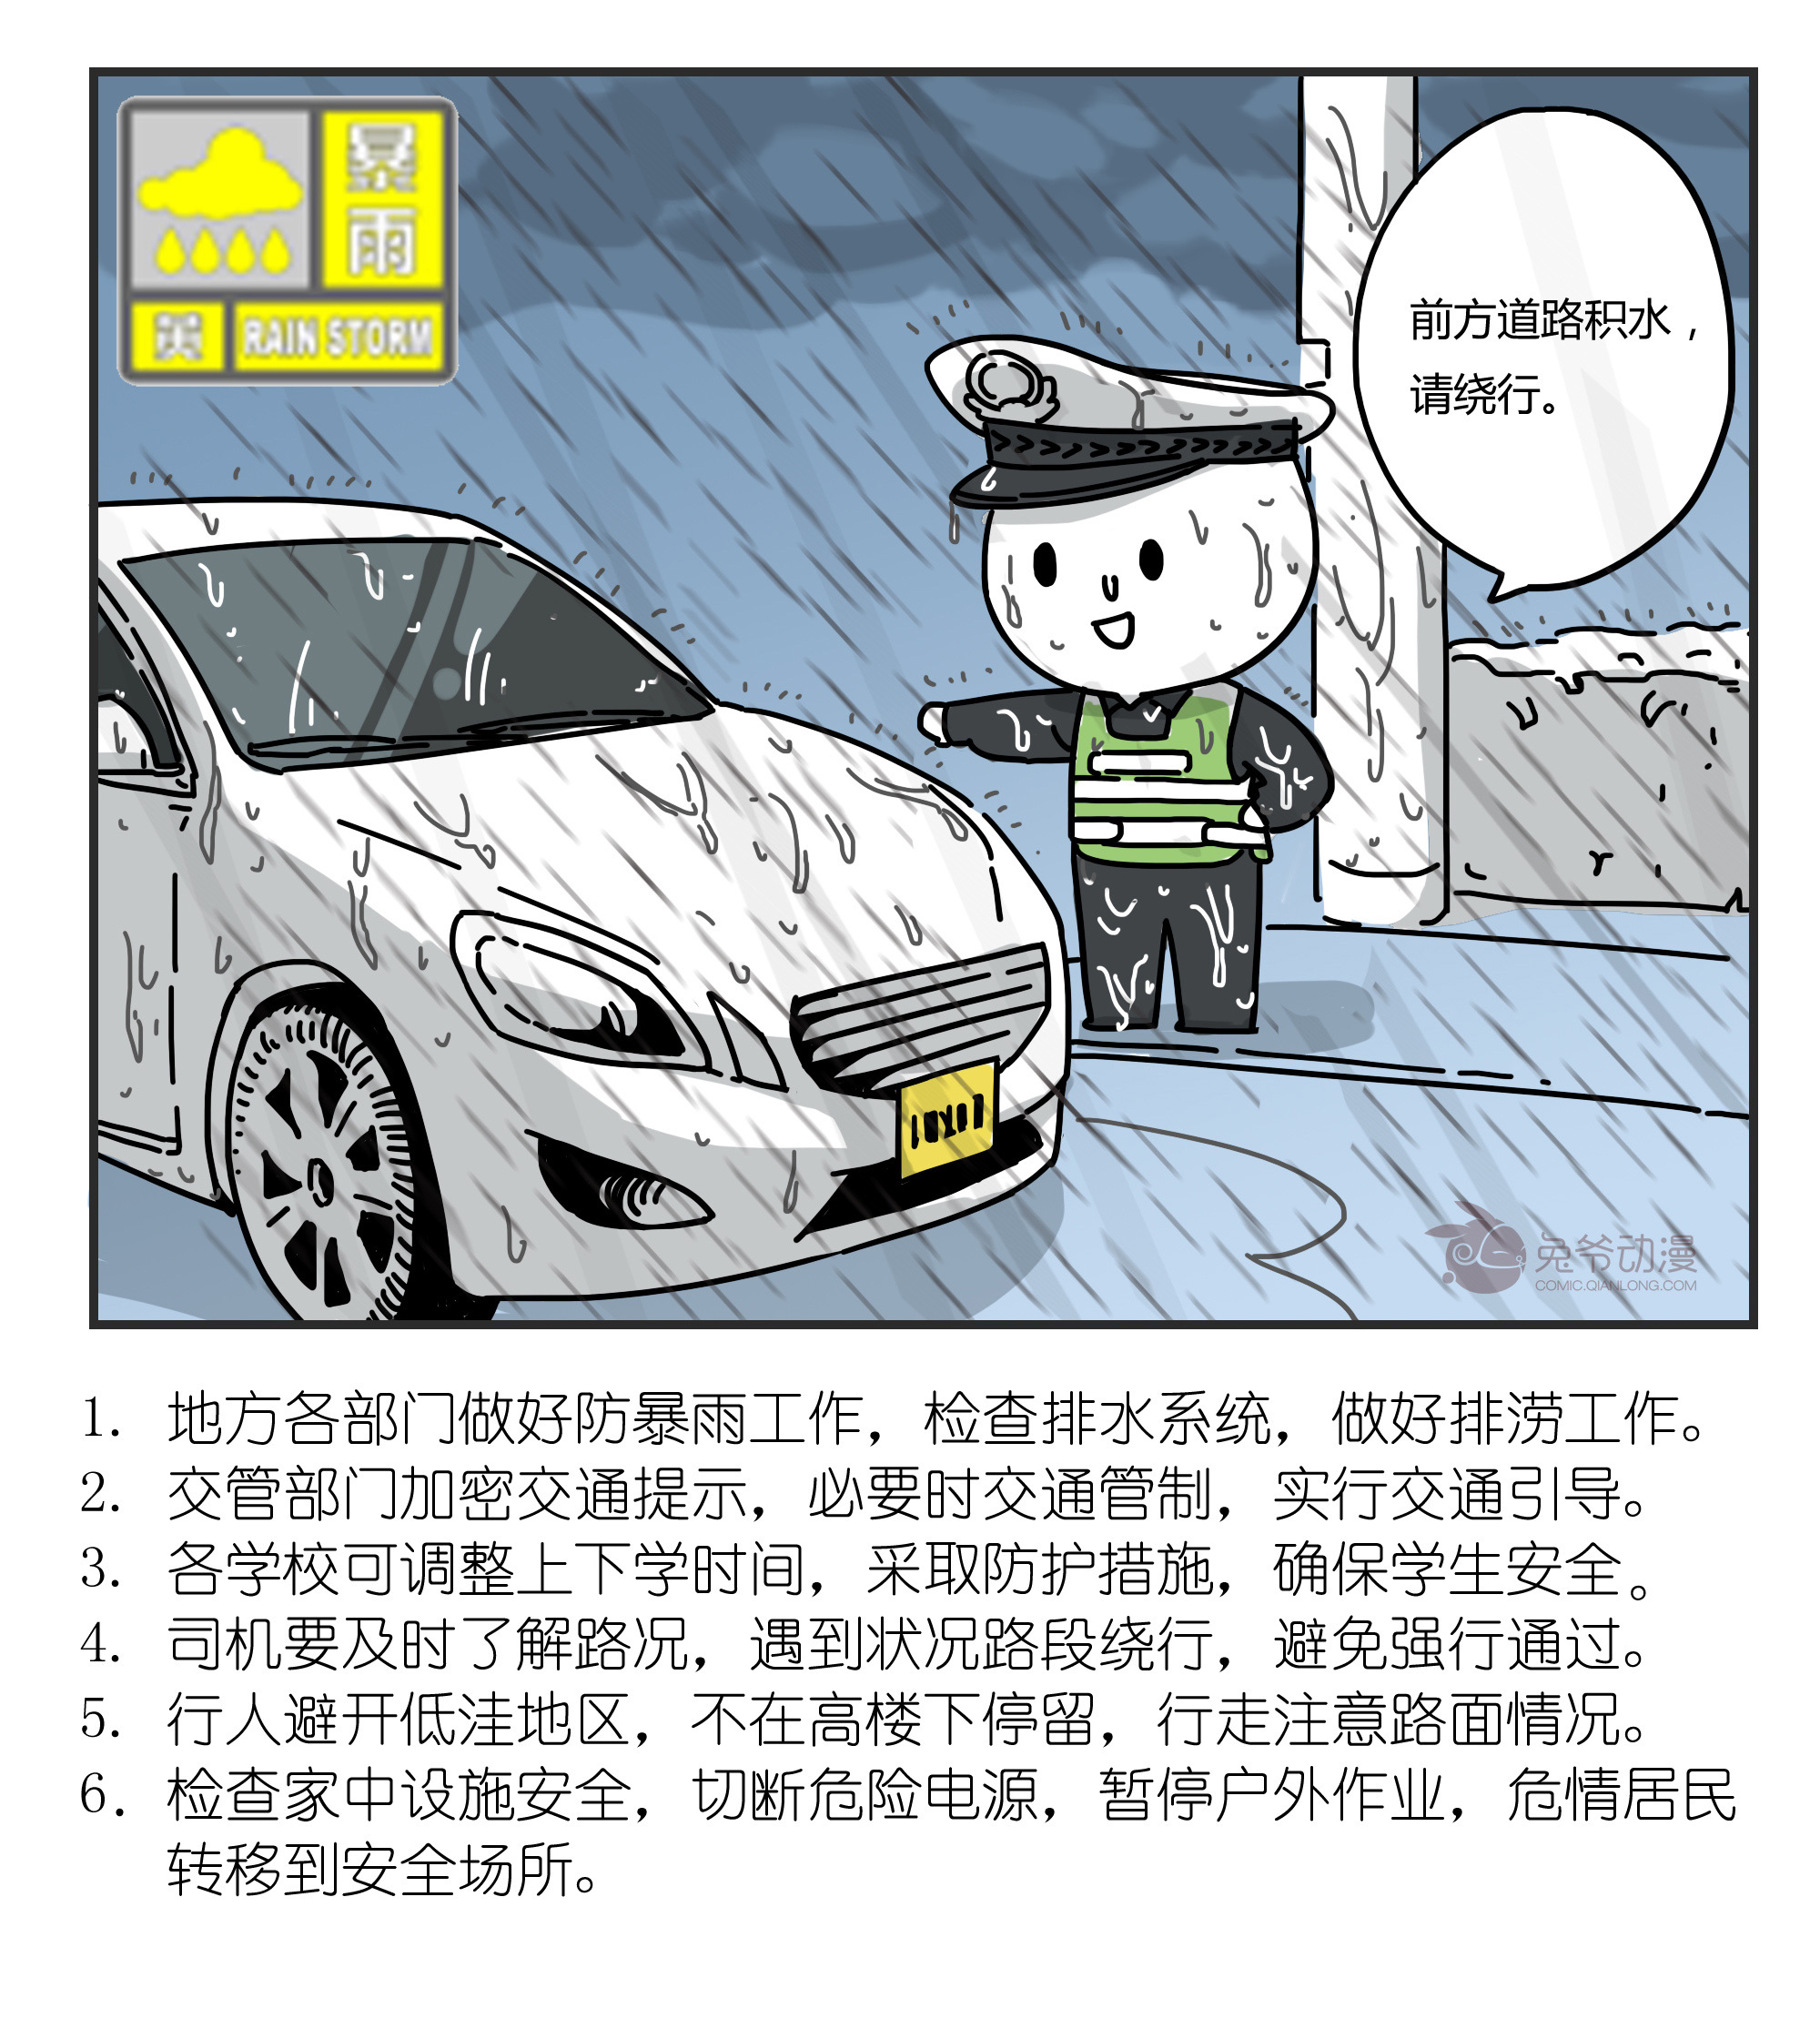 北京市2022年7月27日01时40分升级发布暴雨黄色预警信号